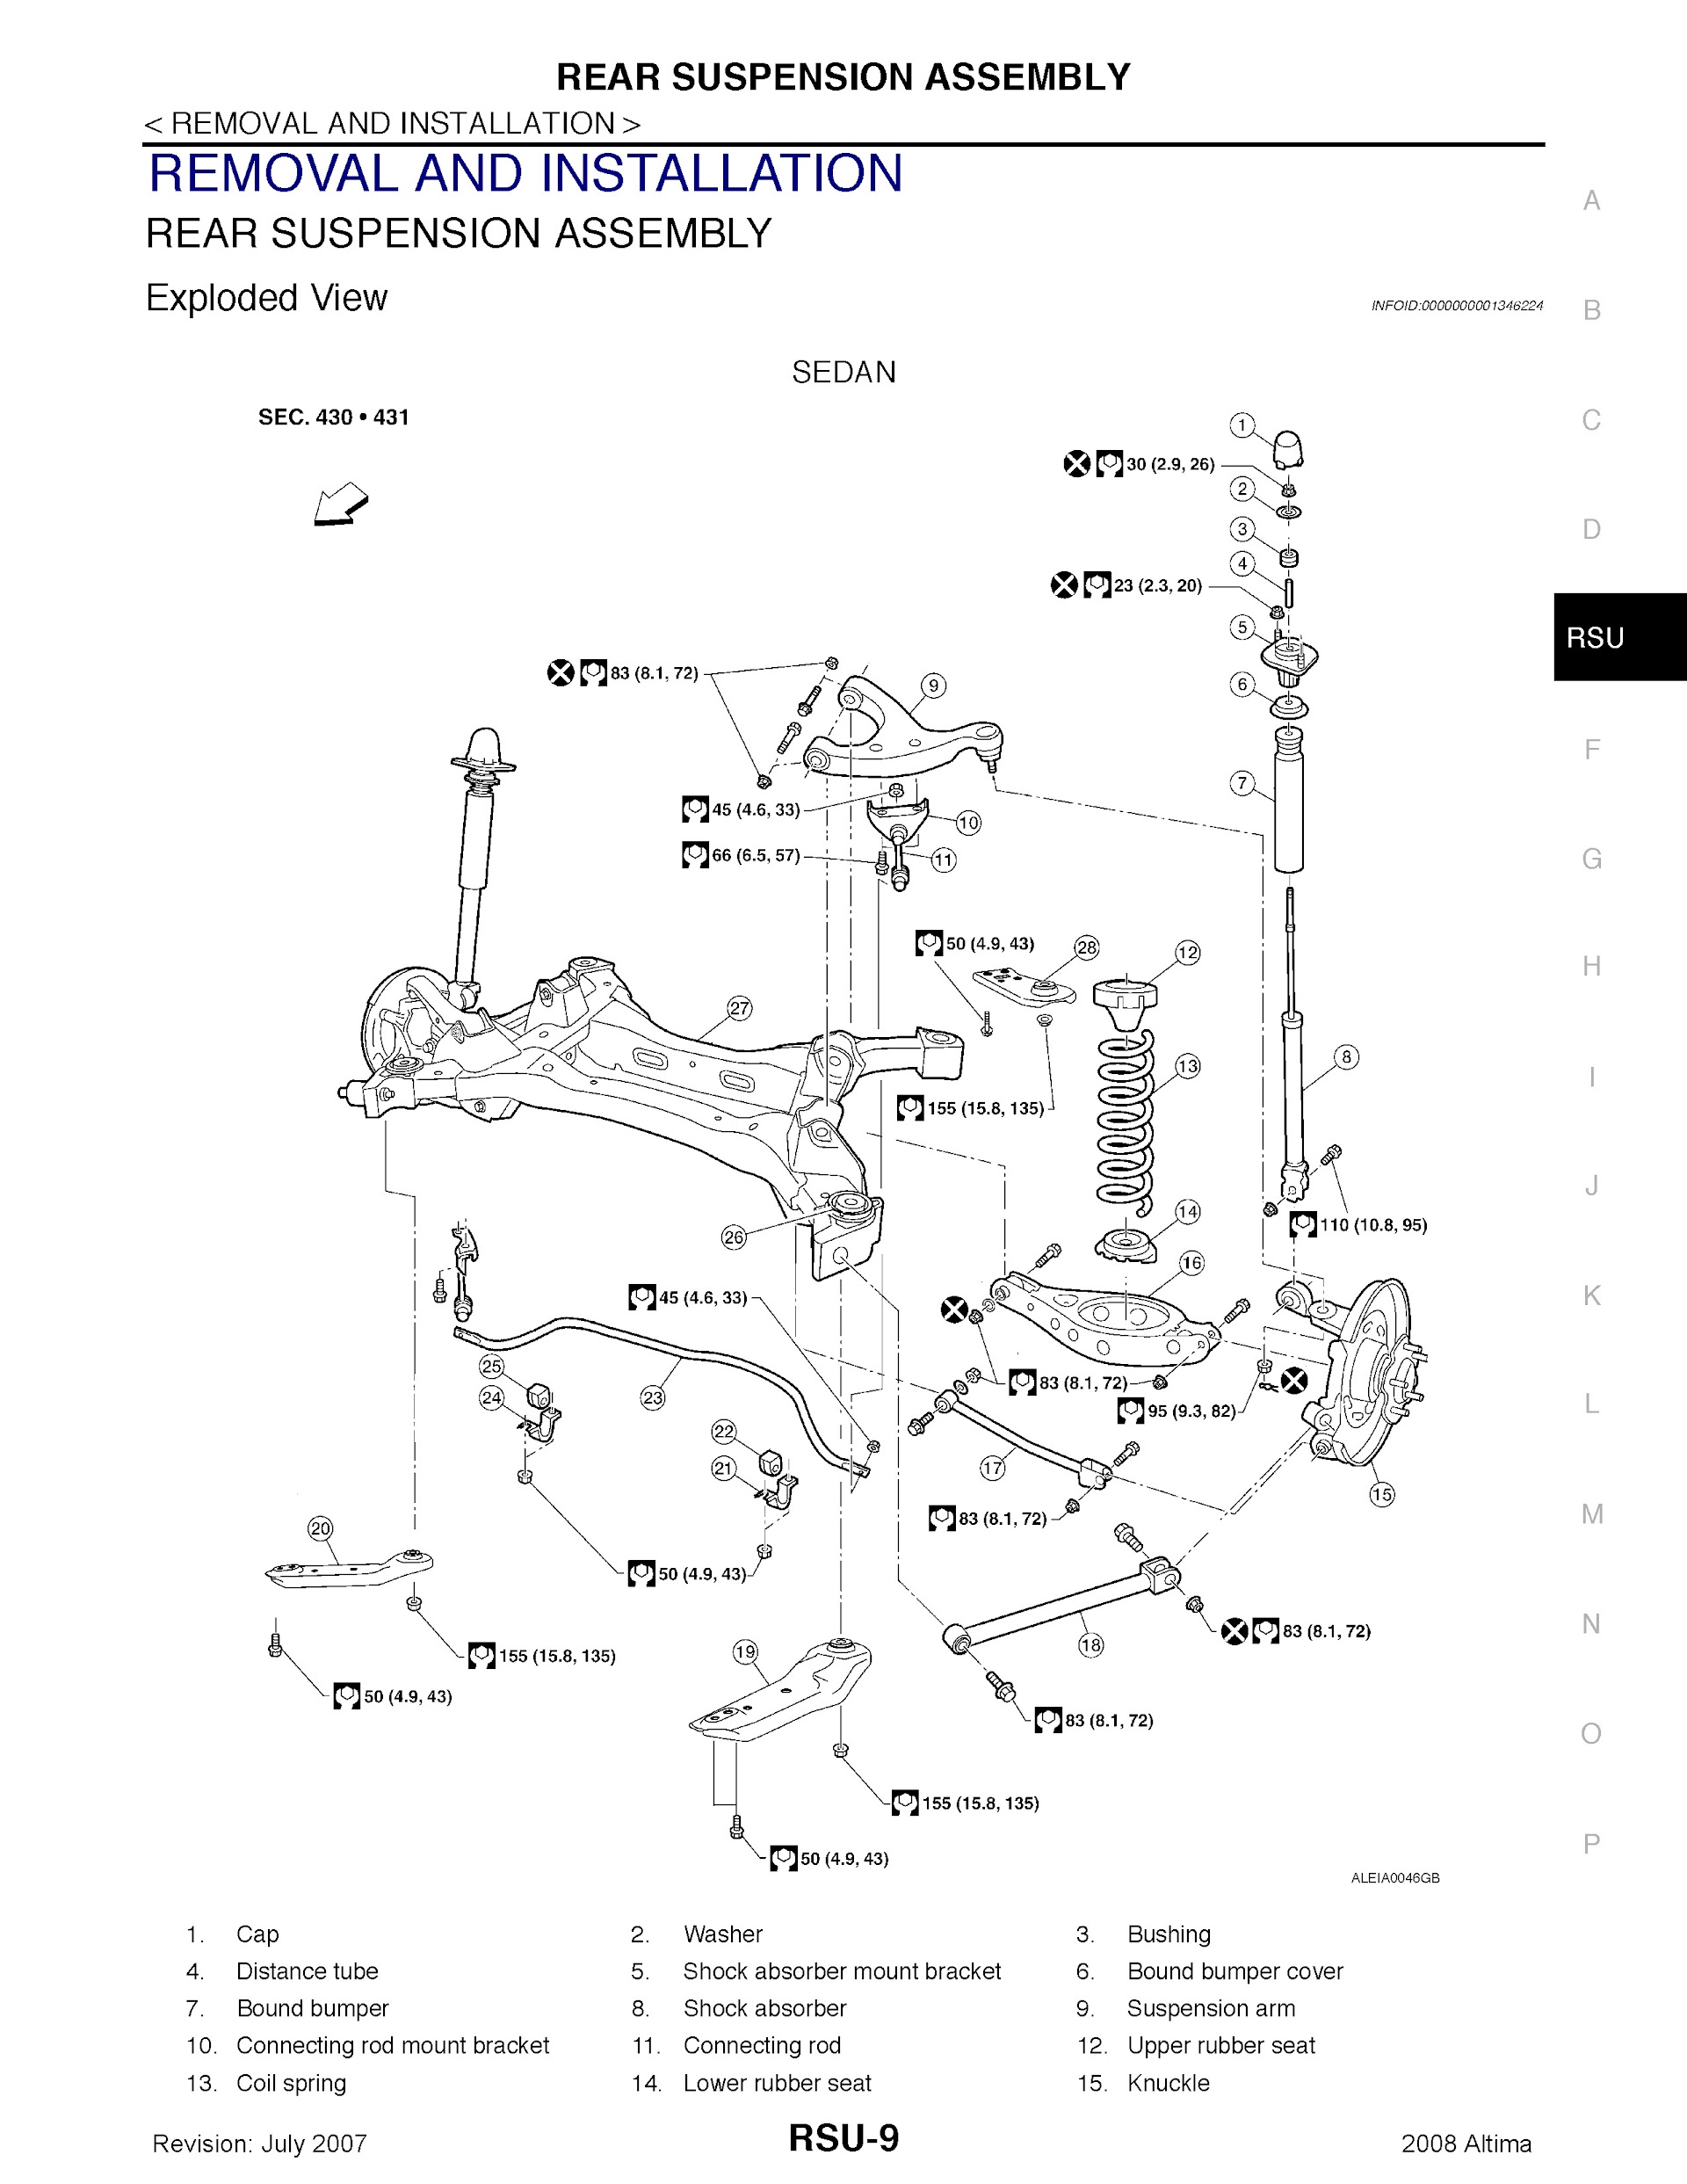 Download 2008 Nissan Altima Repair Manual.